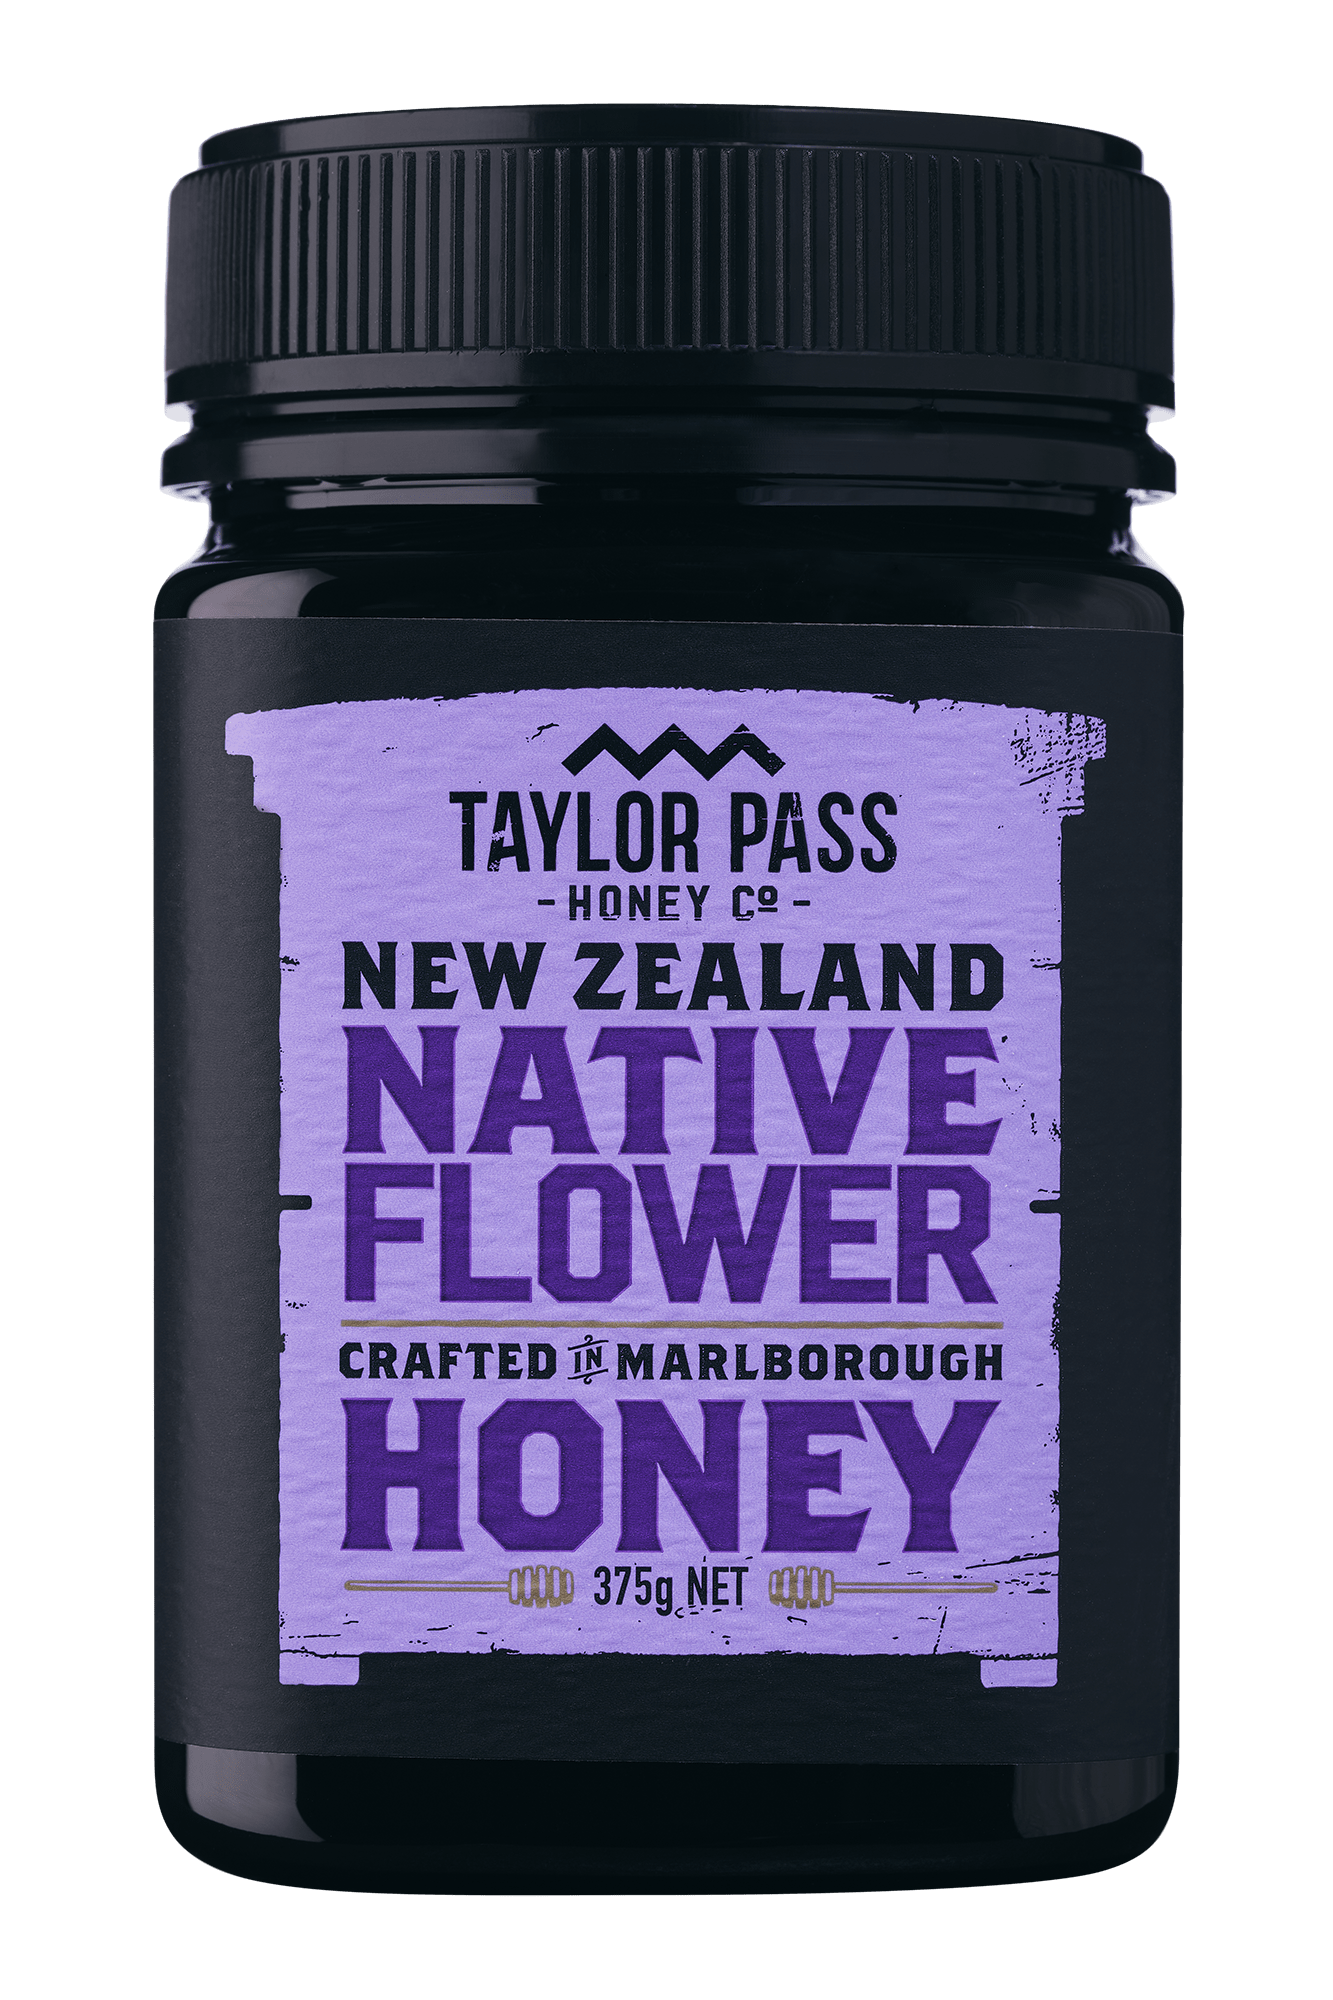 Taylor Pass Honey Co Taylor Pass Honey Co Native Flower Honey